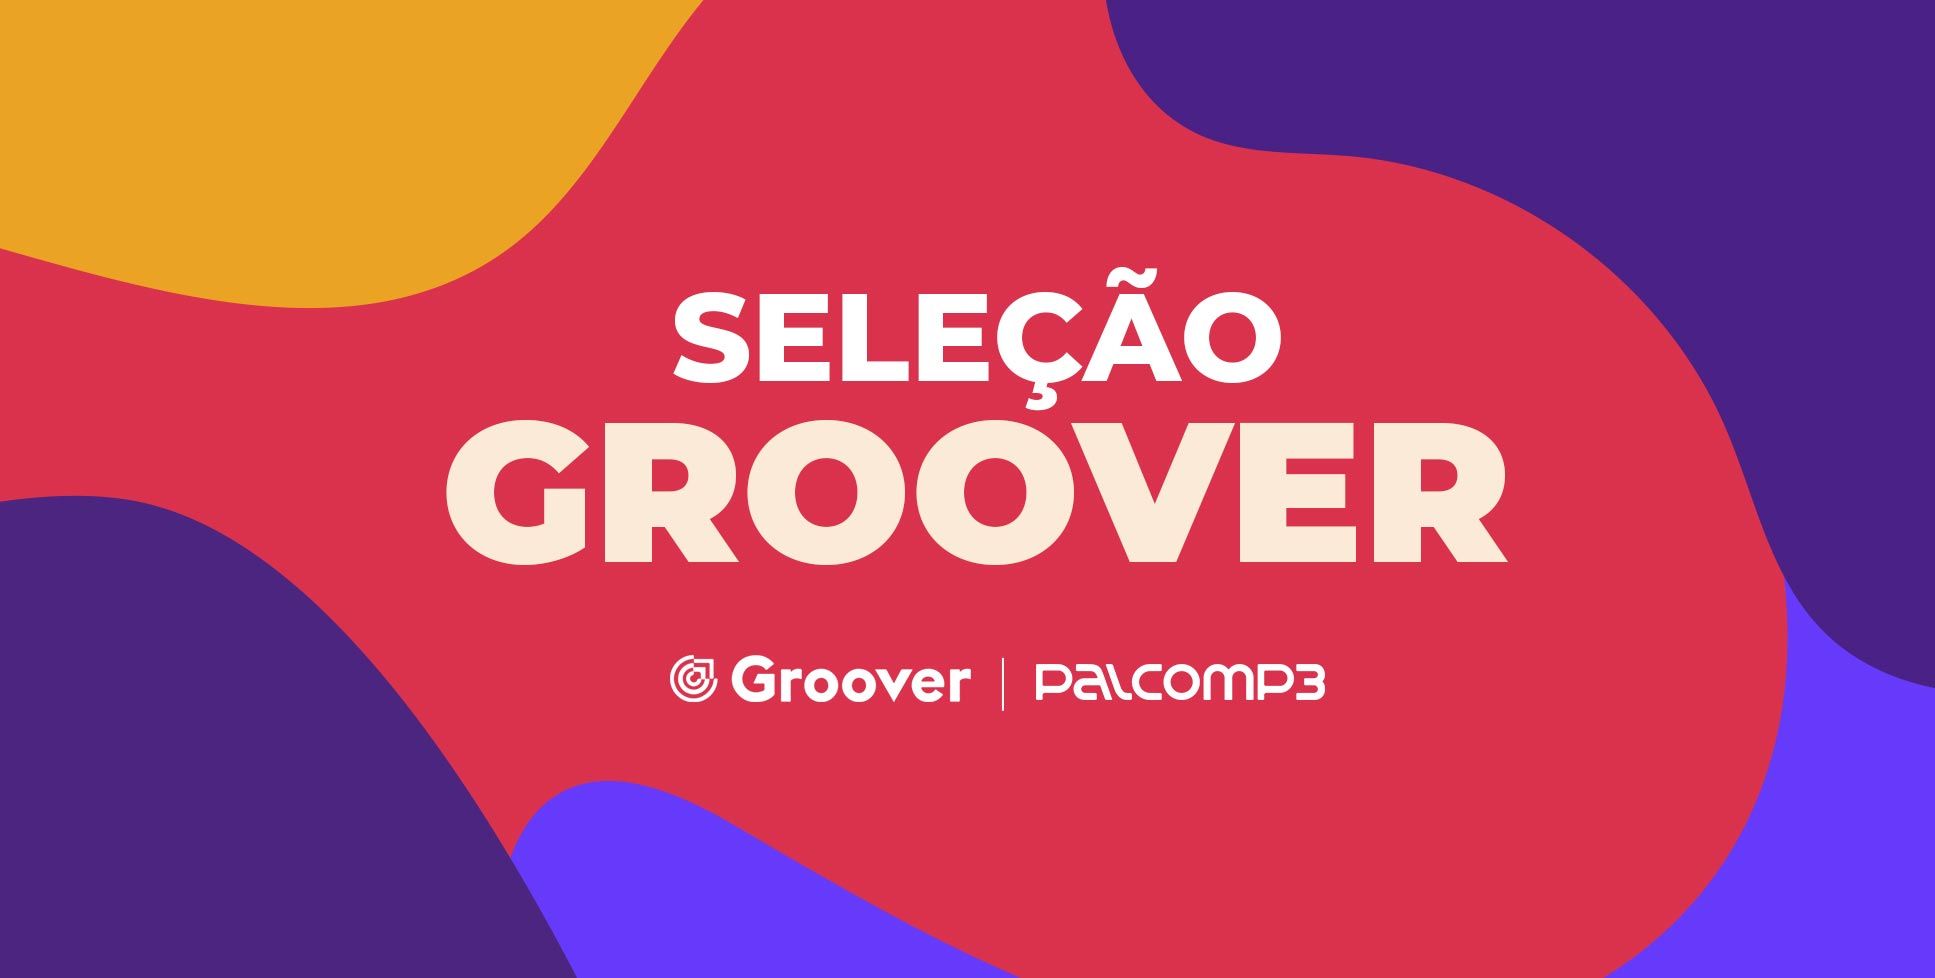 Palco MP3 e Groover: imagem da playlist Seleção Groover